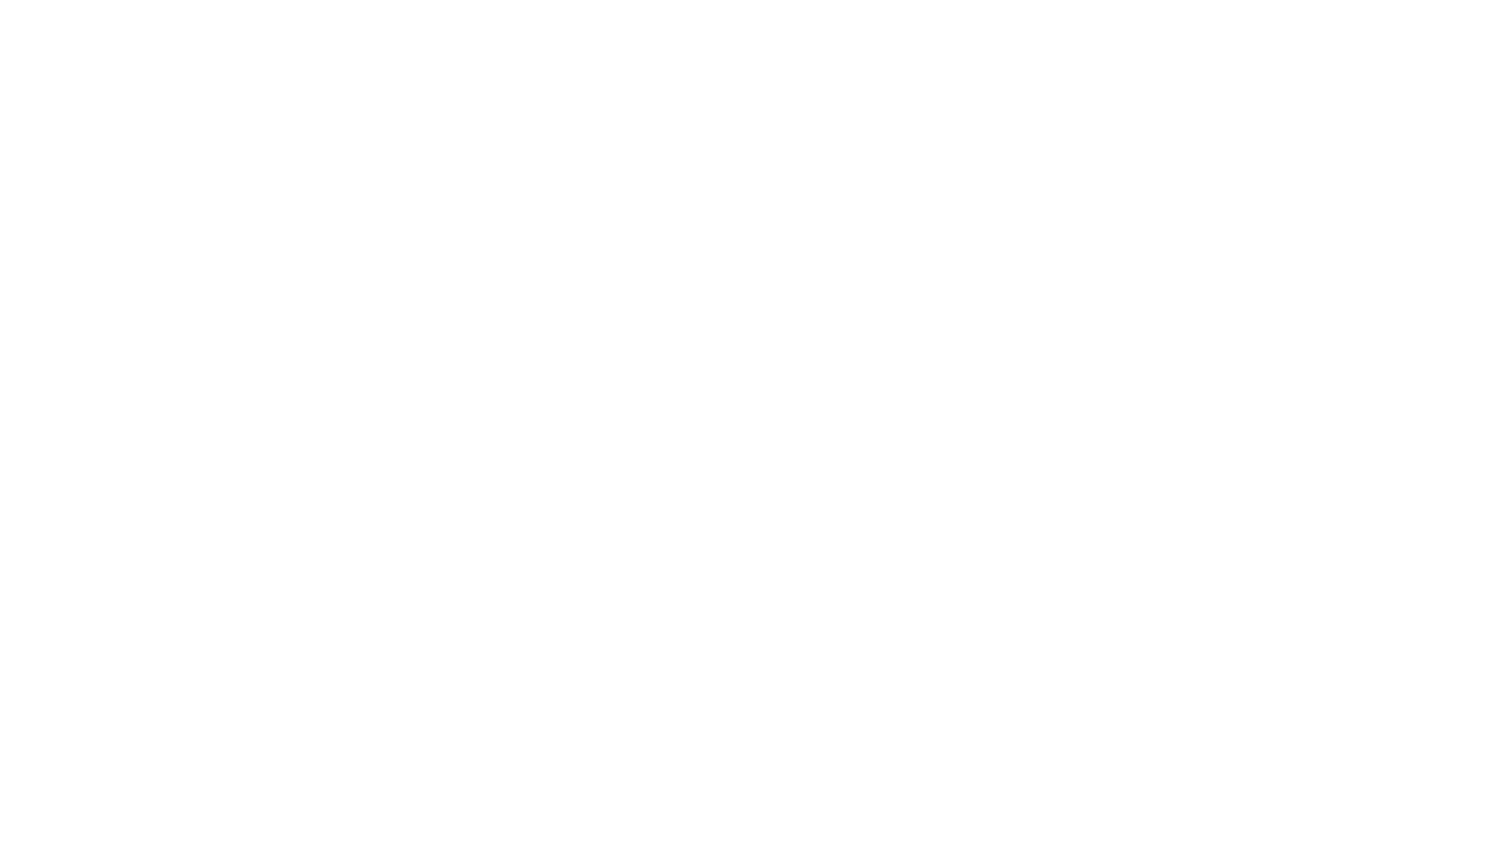 MYTH